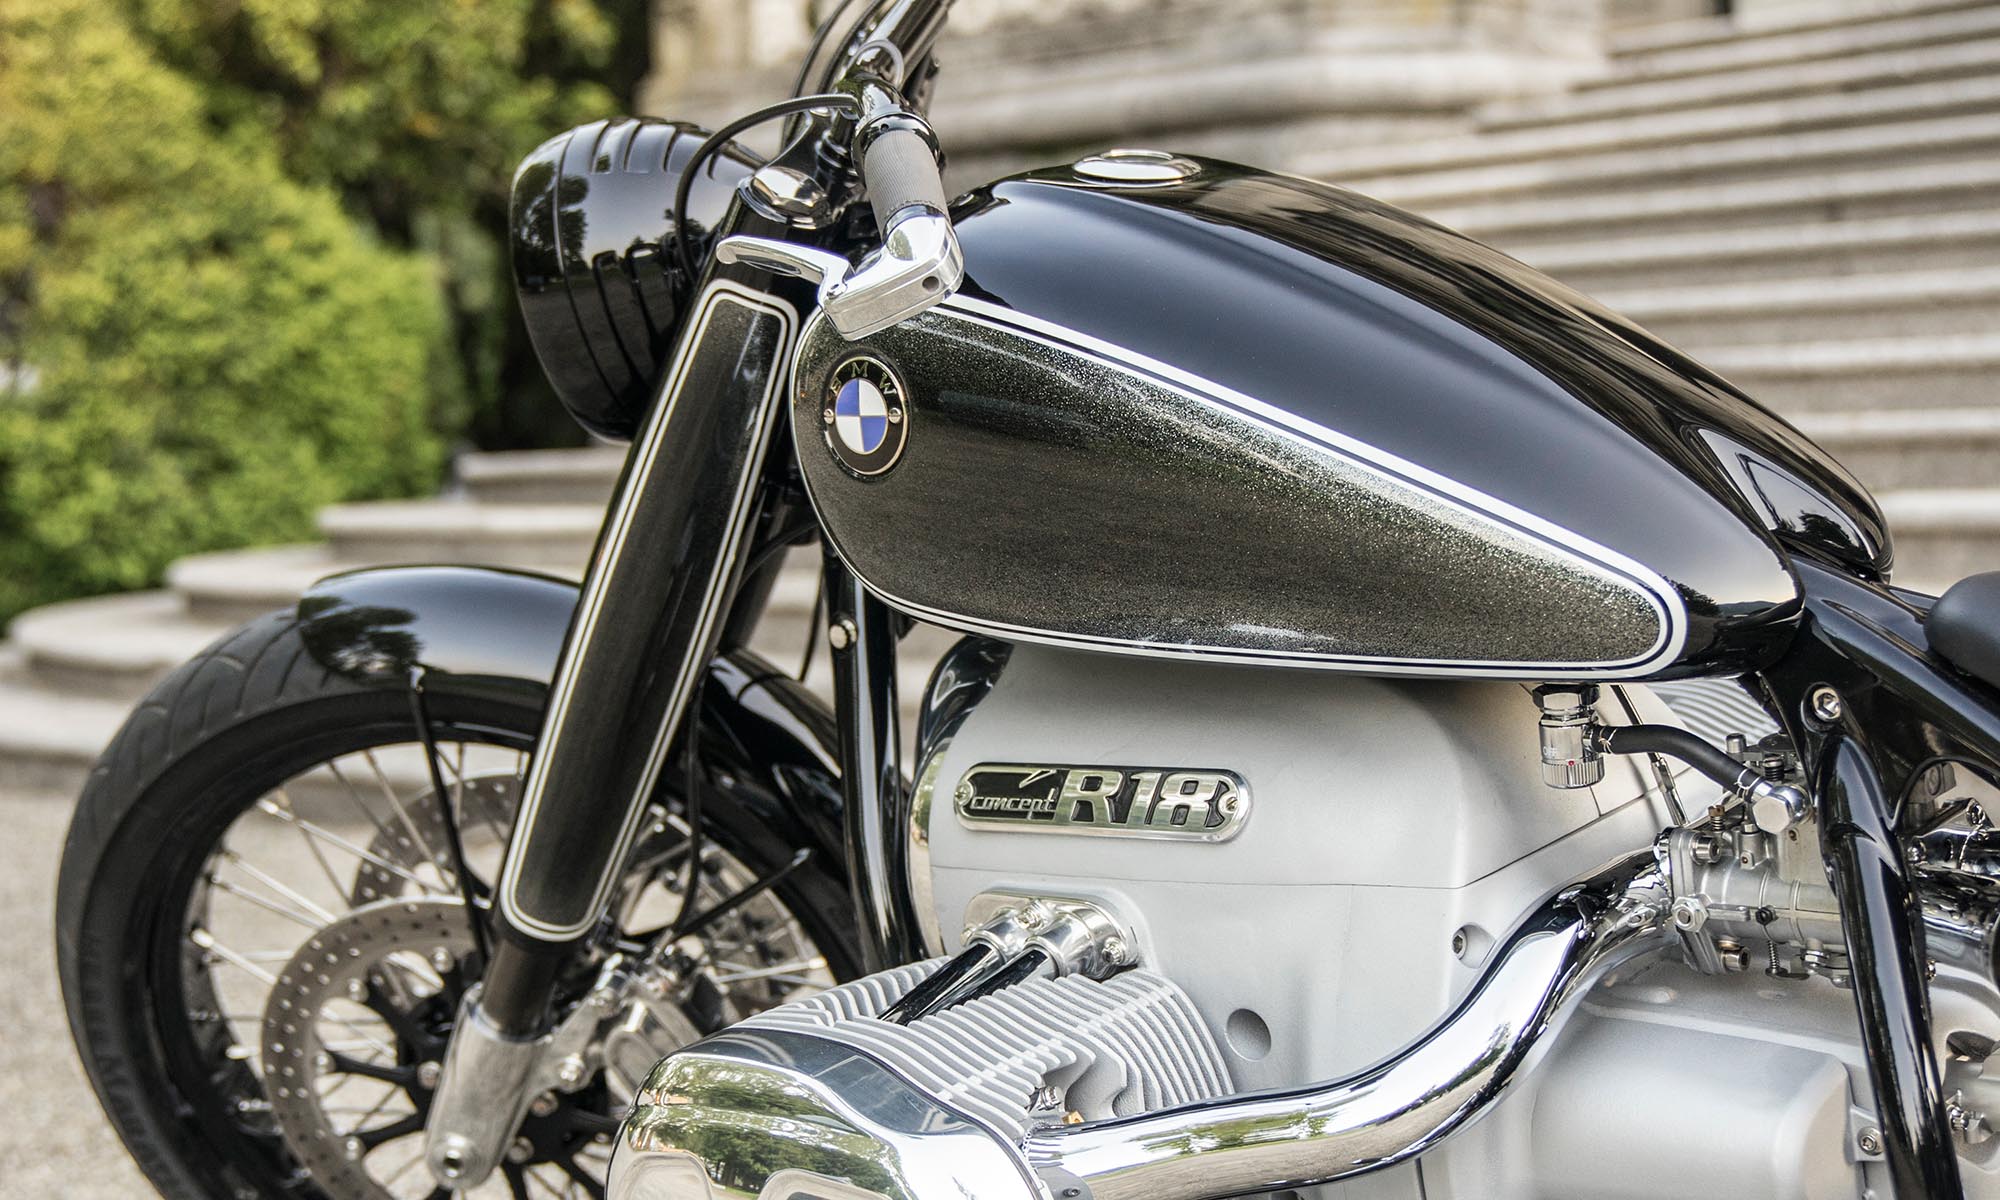 Извечное противостояние BMW и Harley-Davidson: чьи мотоциклы лучше?